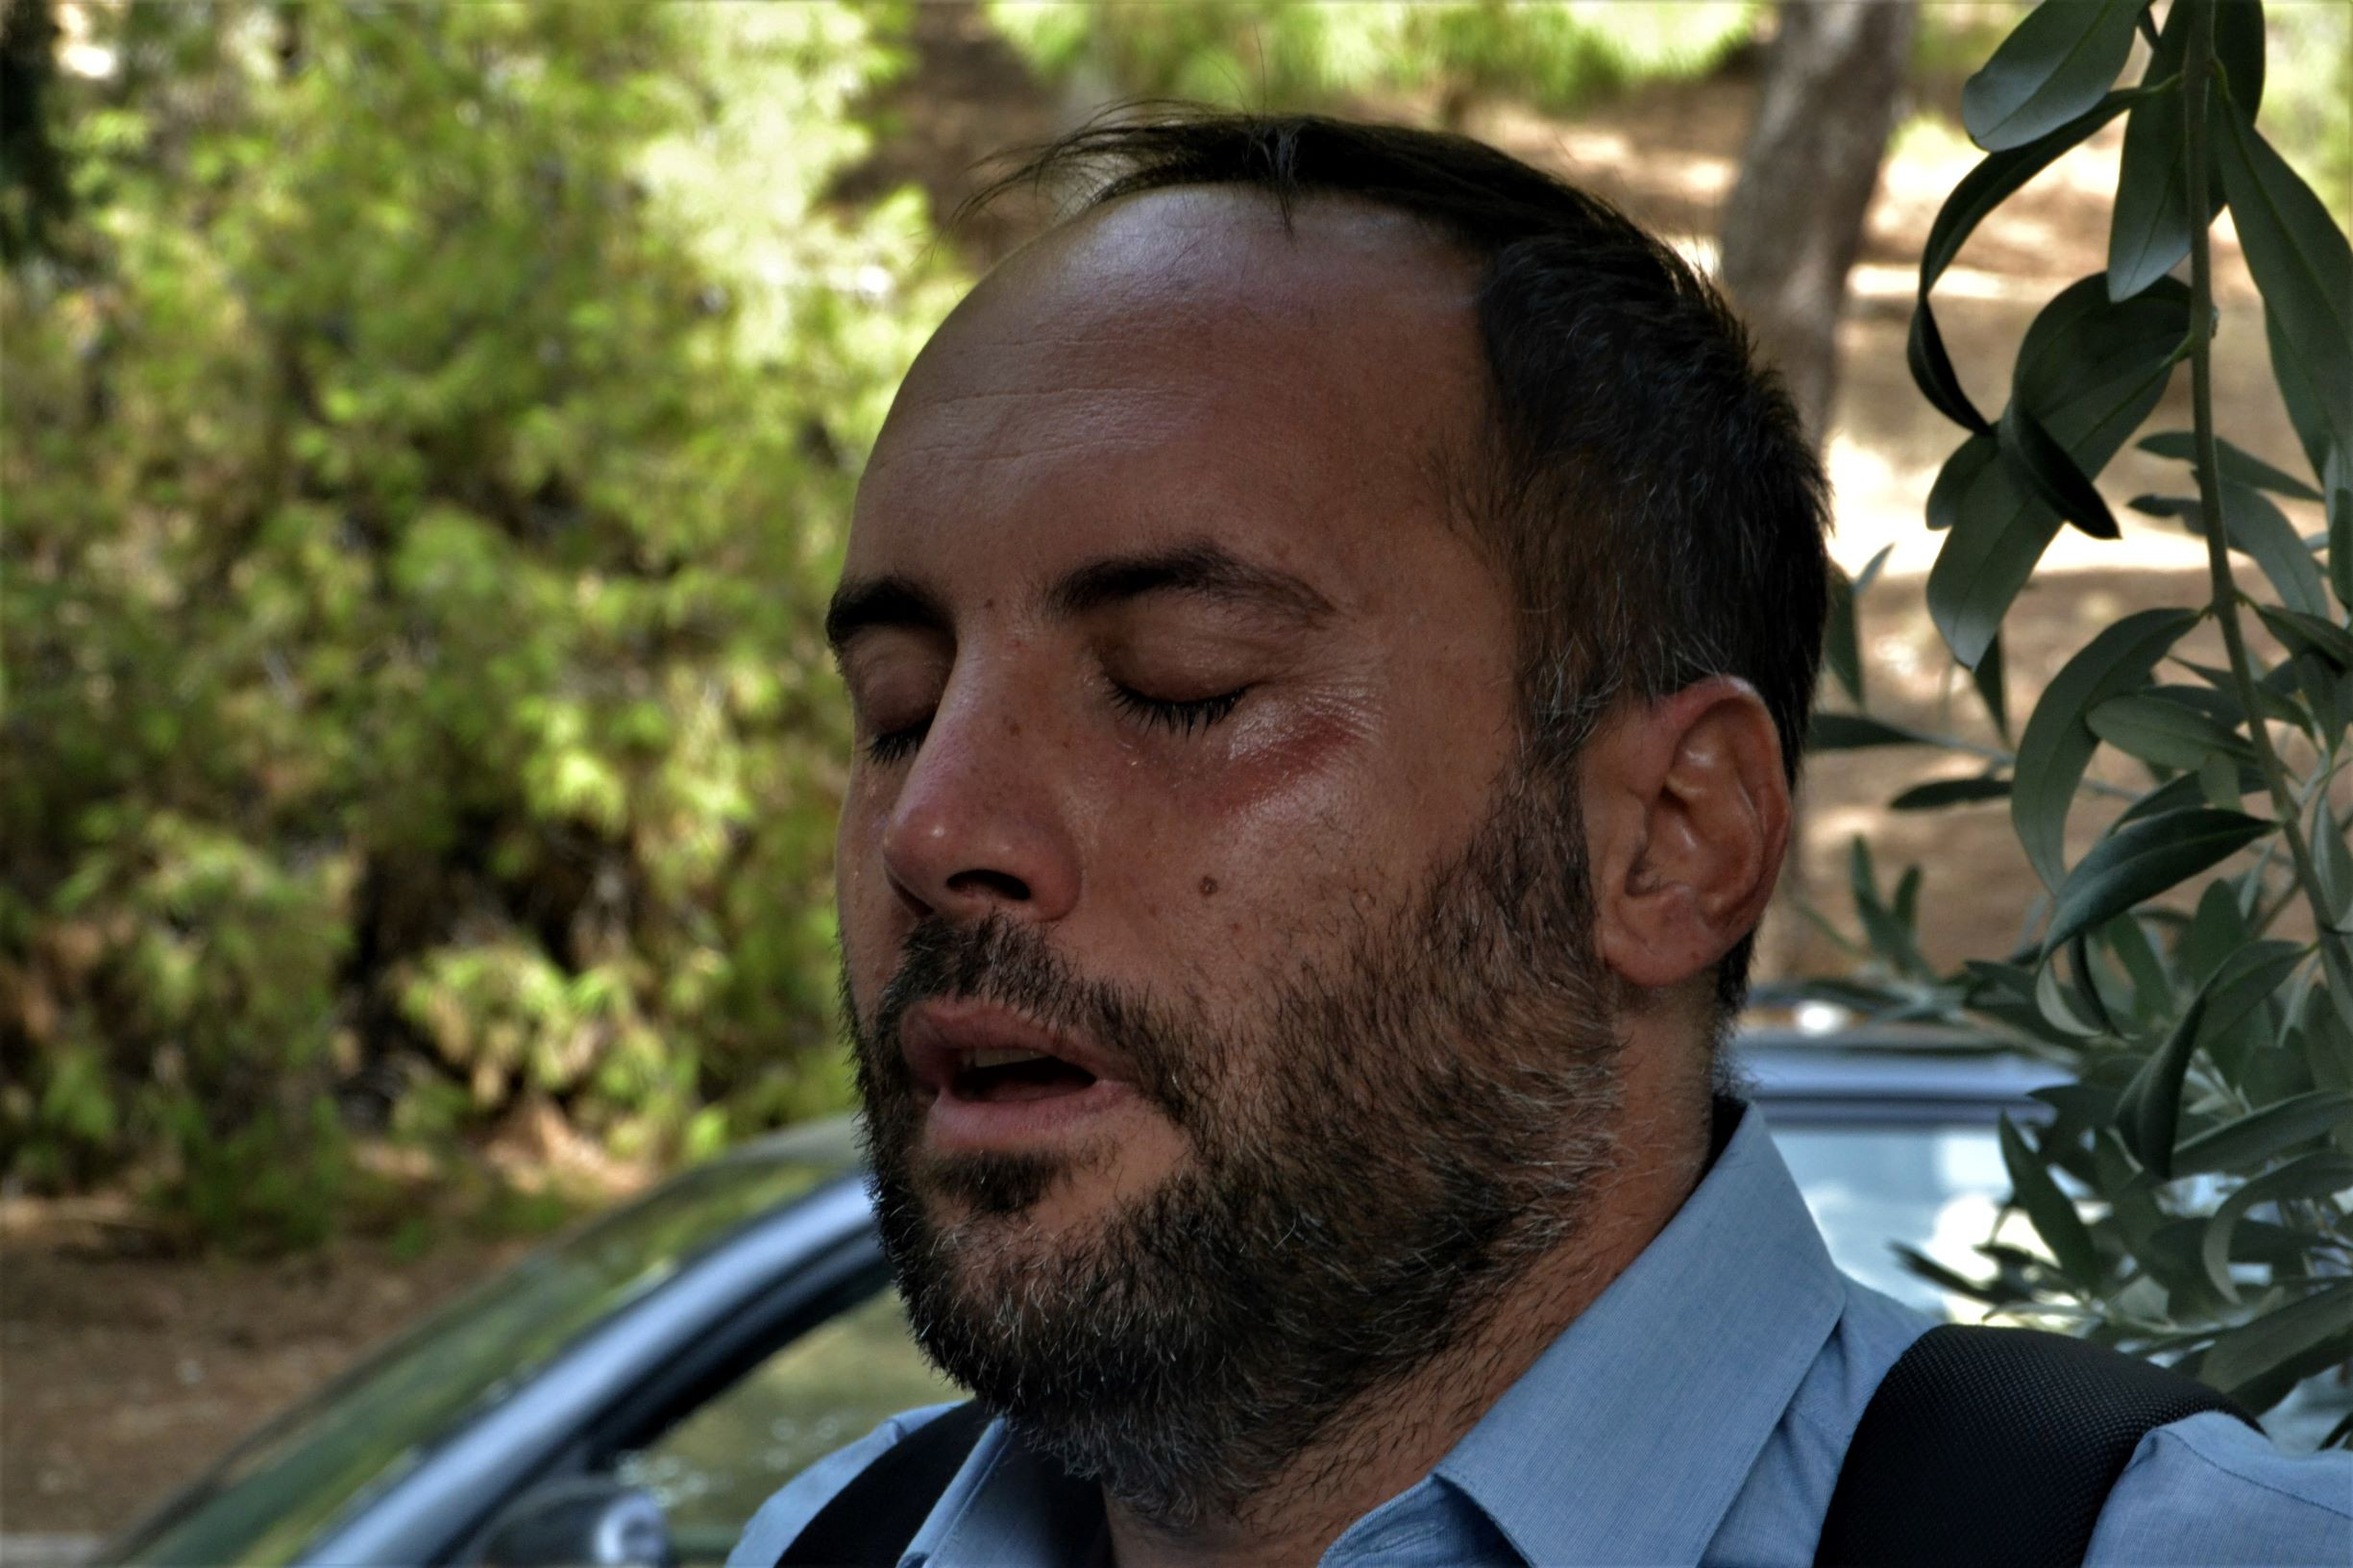 Καταγγελία του Μιλτιάδη Χατζηγιαννάκη στο Tvxs.gr: Απρόκλητη επίθεση των ΜΑΤ, δέχθηκα δακρυγόνο στο πρόσωπο